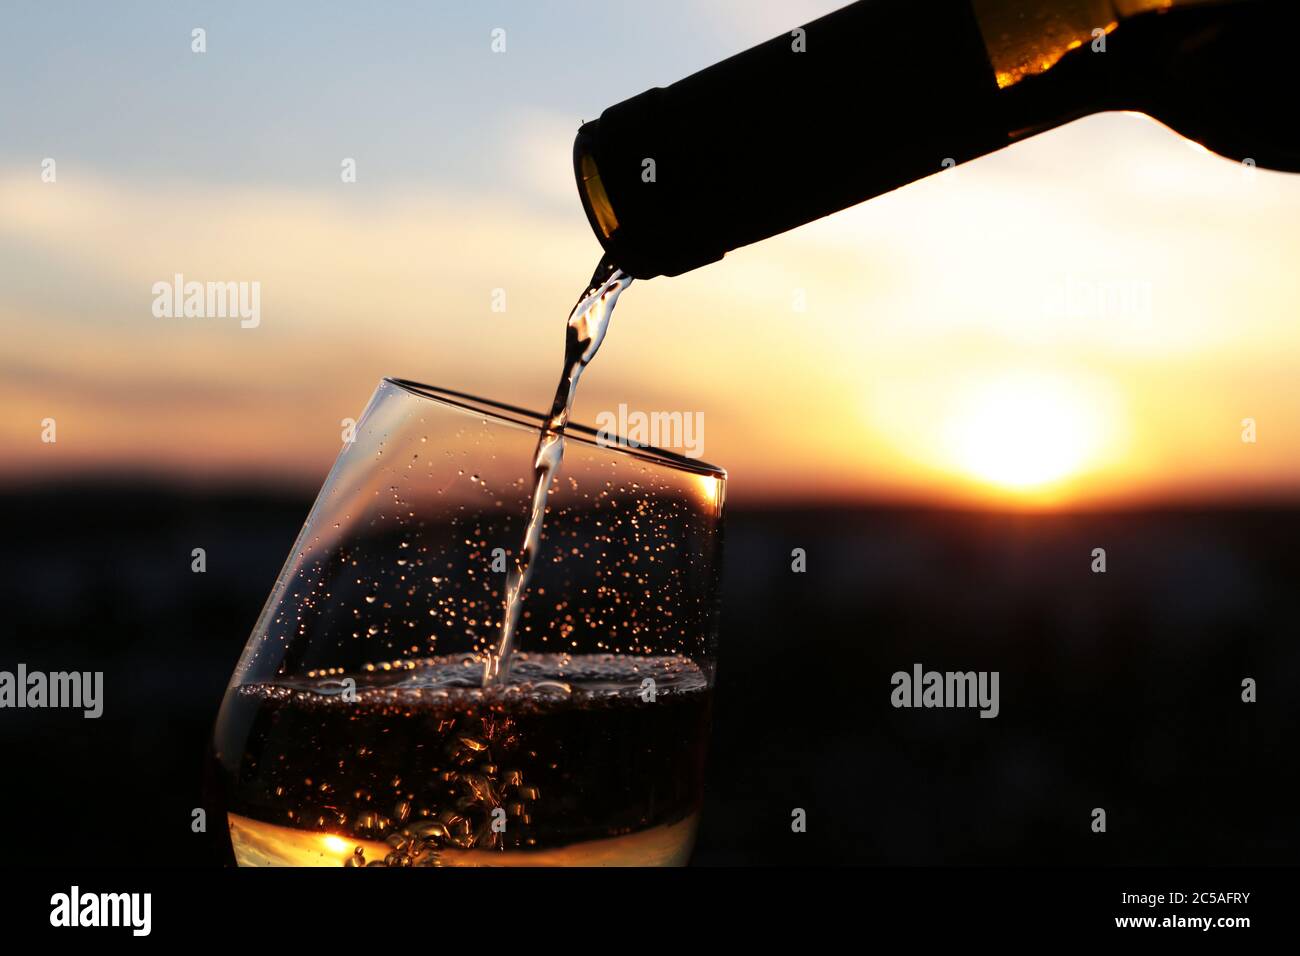 Vino bianco che si versa da una bottiglia nel bicchiere su uno sfondo bellissimo tramonto, fuoco selettivo. Concetto di celebrazione, cena romantica Foto Stock